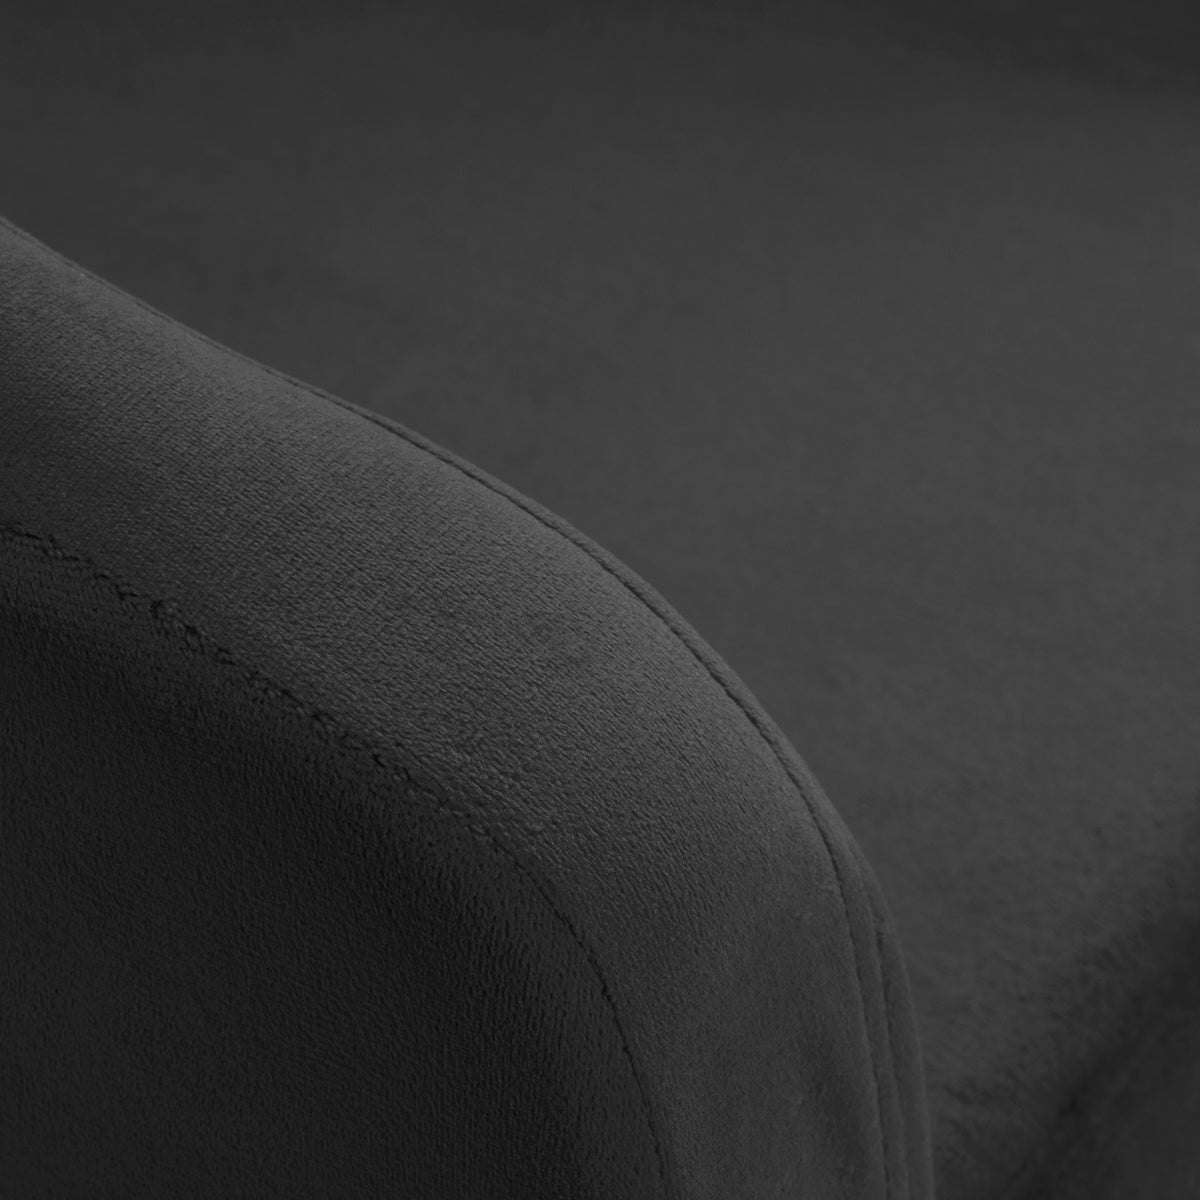 4Rico Swivel Chair QS-BL14G Grey